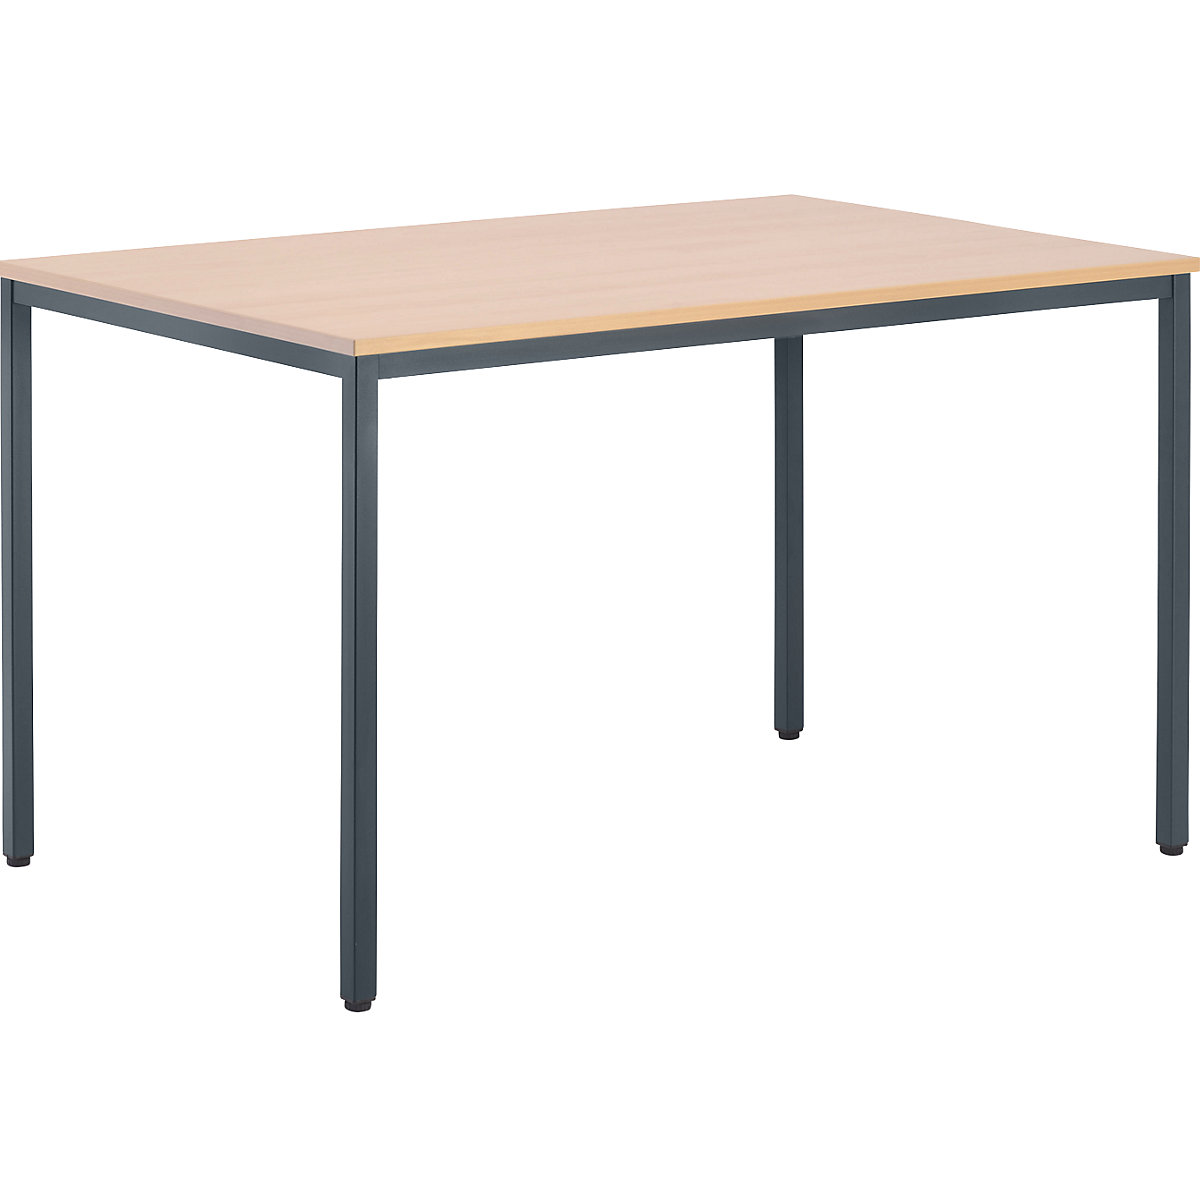 Višenamjenski stol – eurokraft basic, VxŠxD 720 x 1200 x 800 mm, ploča u imitaciji bukve, postolje u bazalt sivoj boji-6